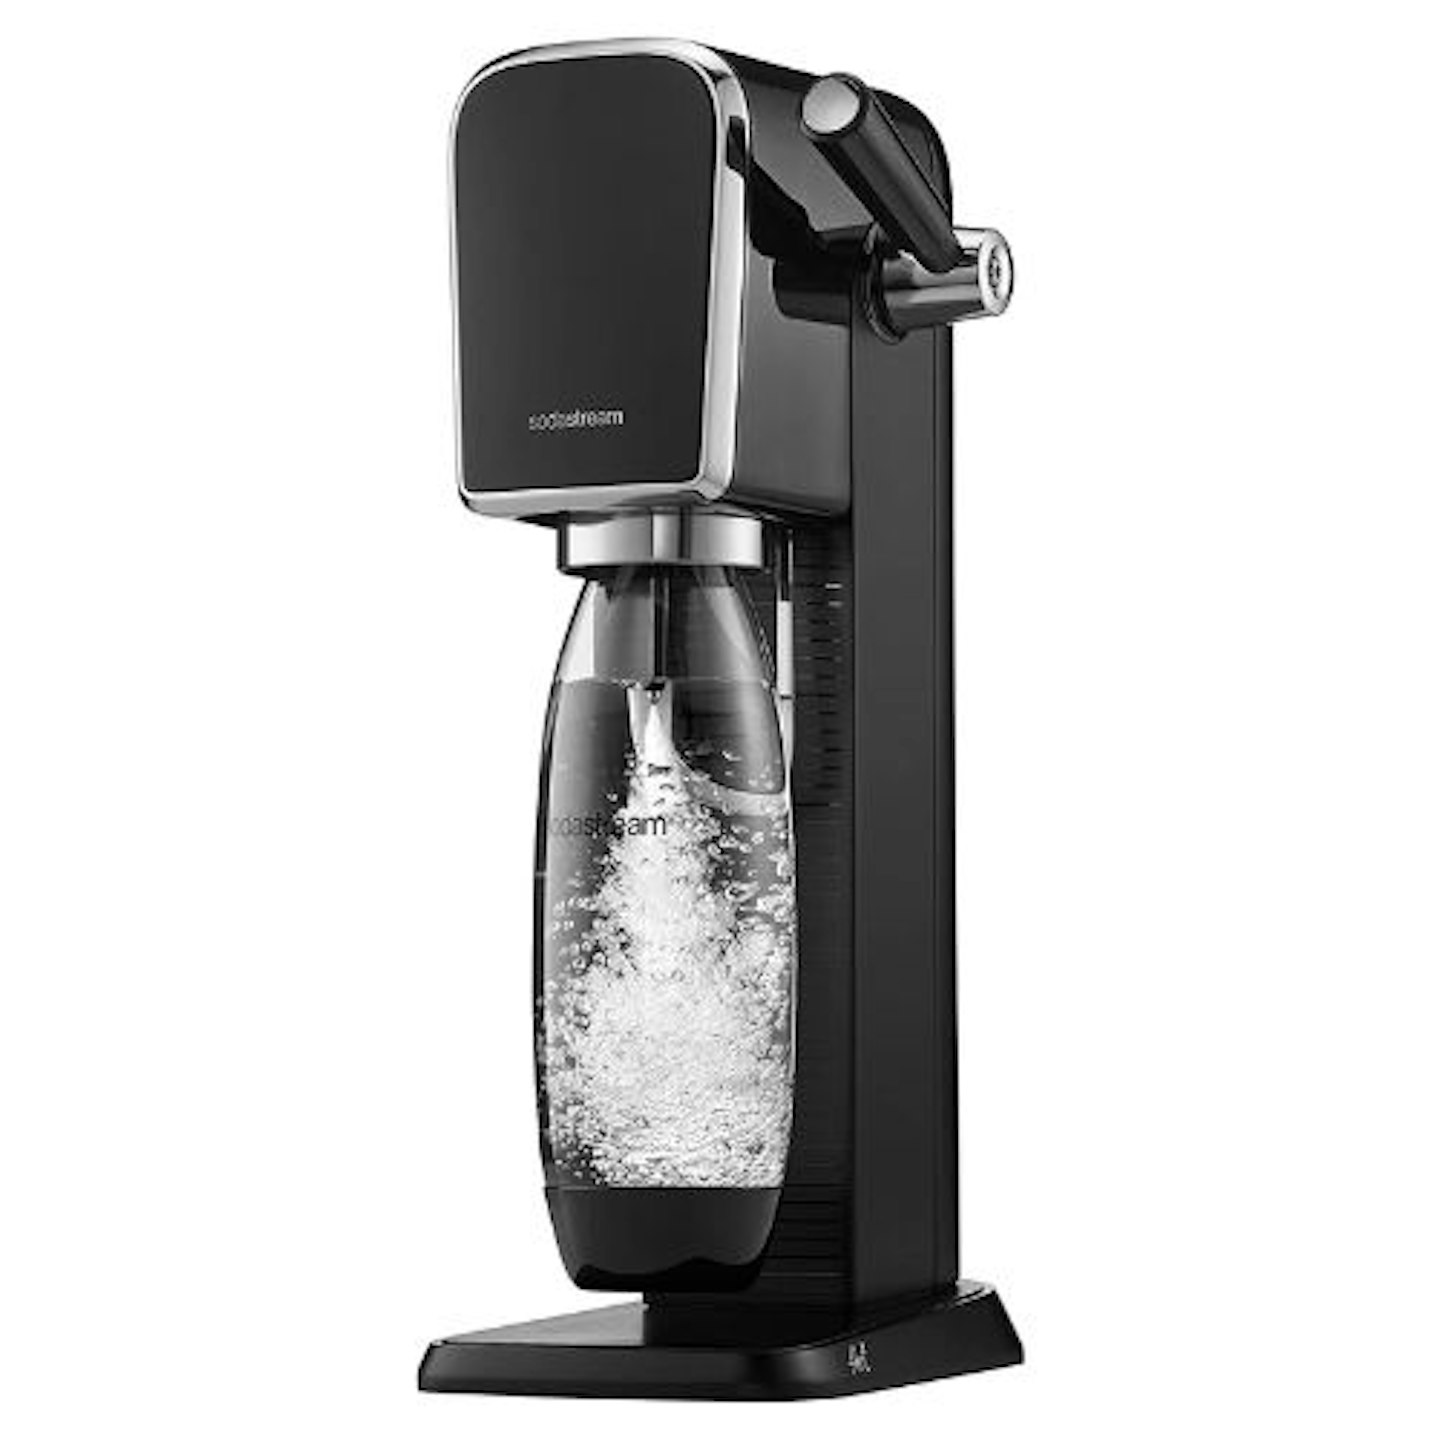  SodaStream Art Sparkling Water Maker Machine